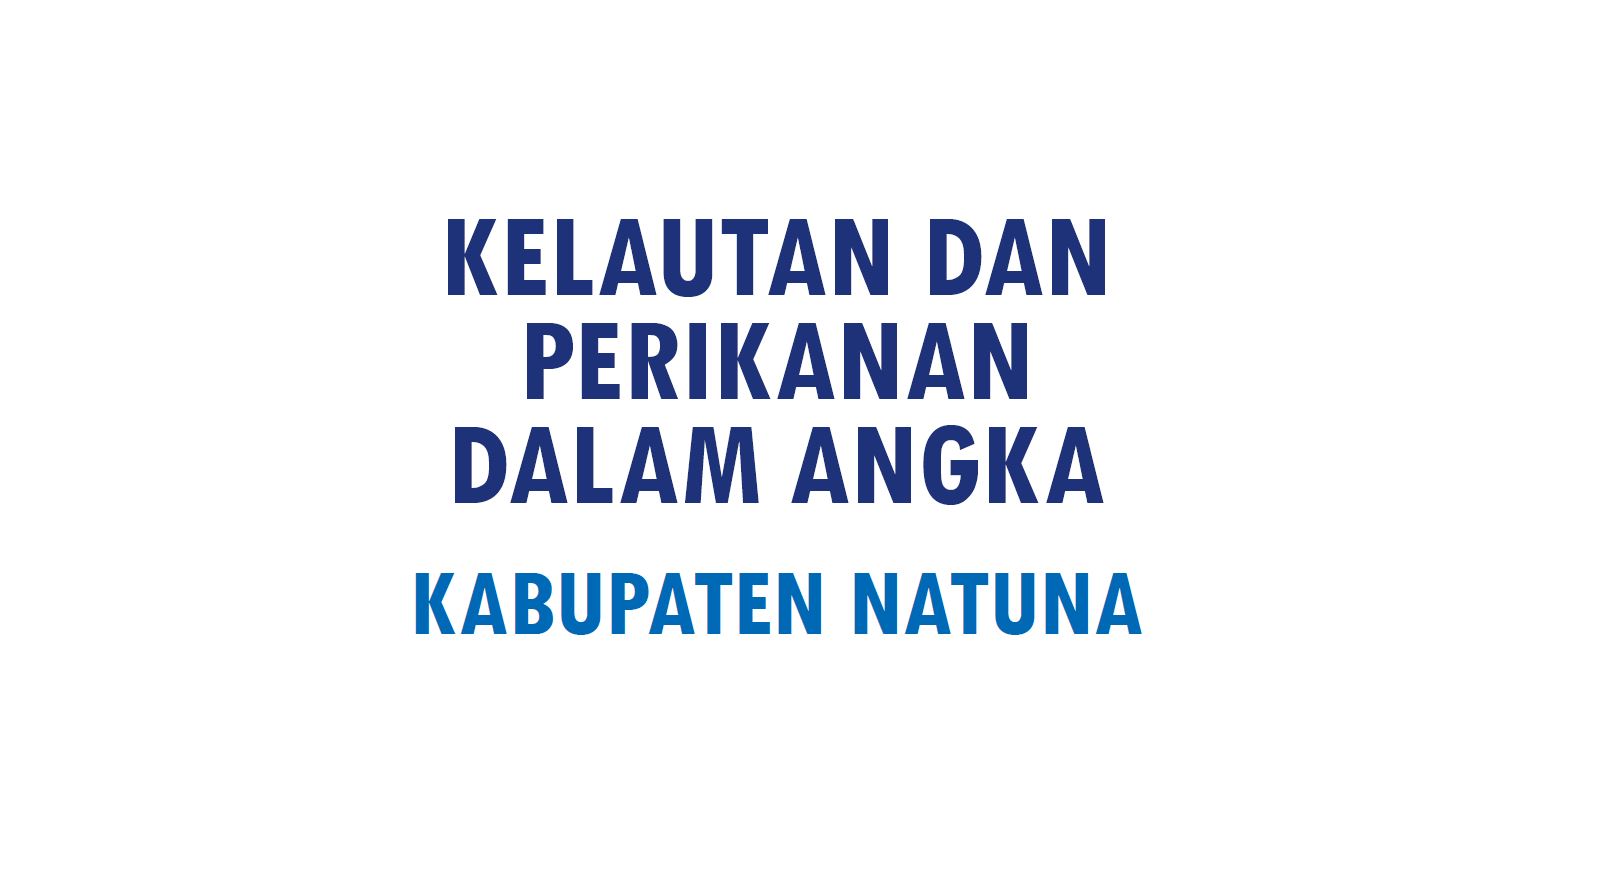 Kelautan dan Perikanan Dalam Angka 2015 Kabupaten Natuna